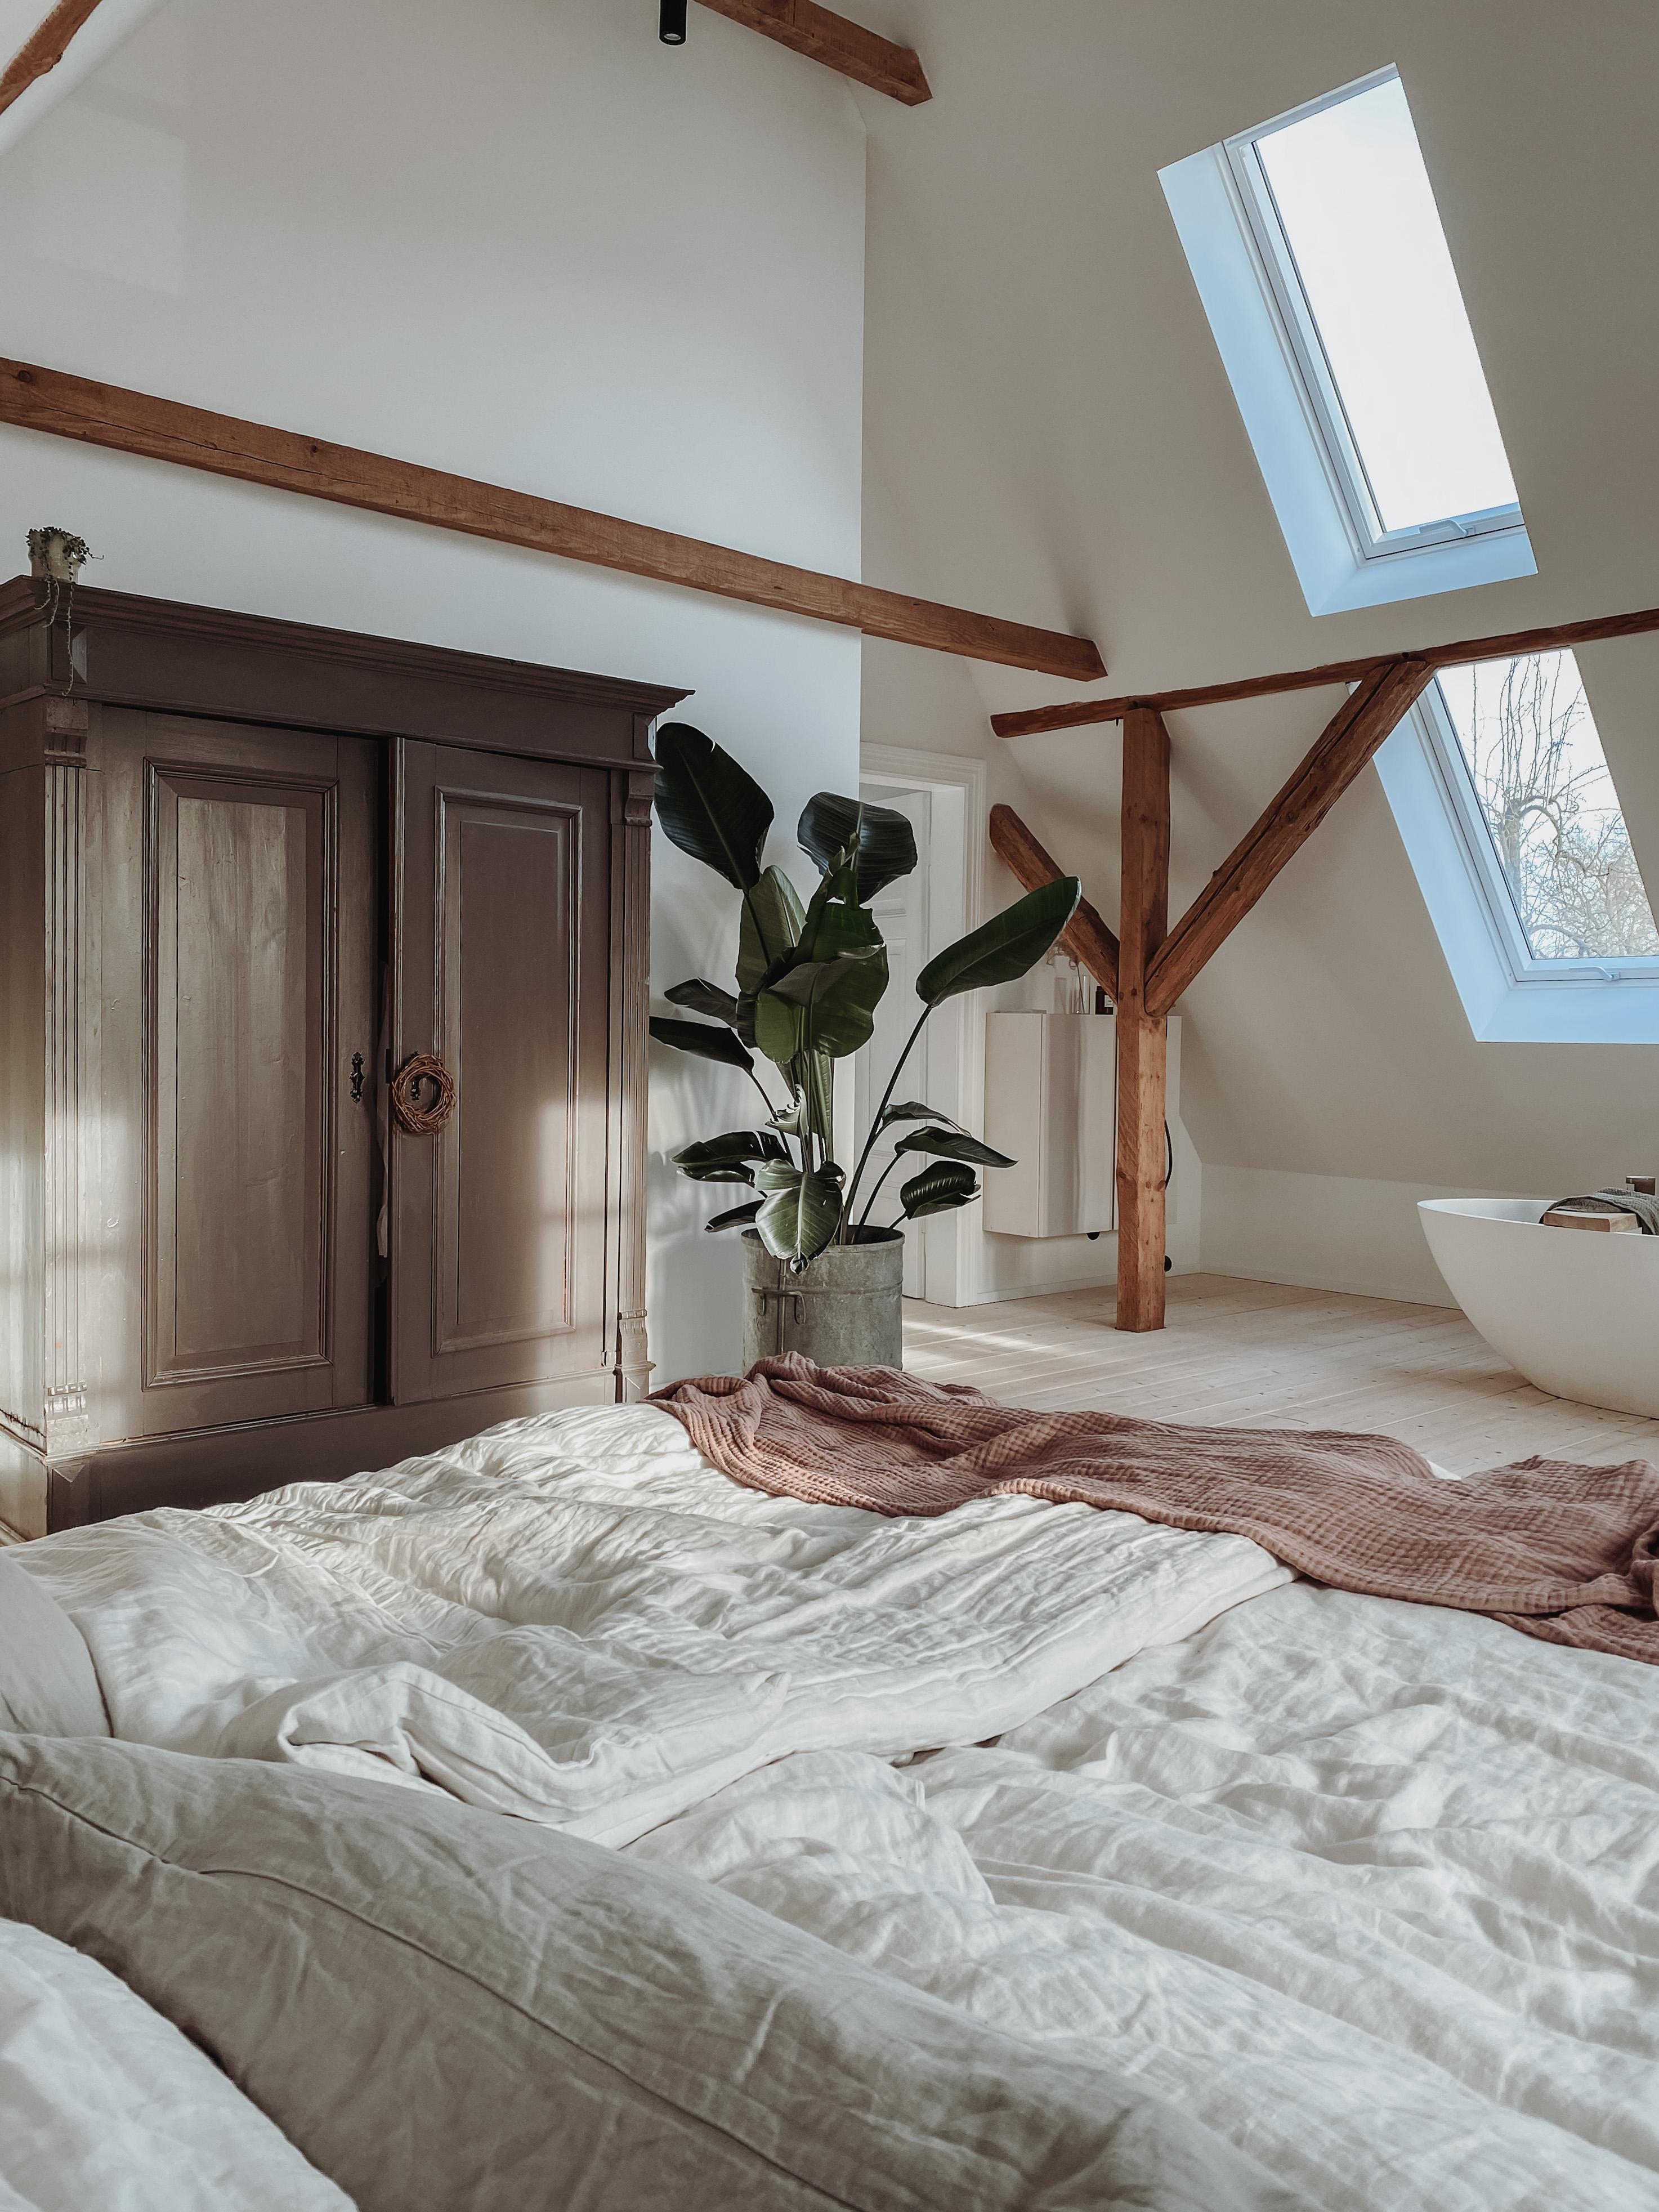 #Schlafzimmer #altbau #fachwerk #altbauliebe #interior #hyggehome #bauherren #hausumbau #hausausbau #fachwerkliebe 